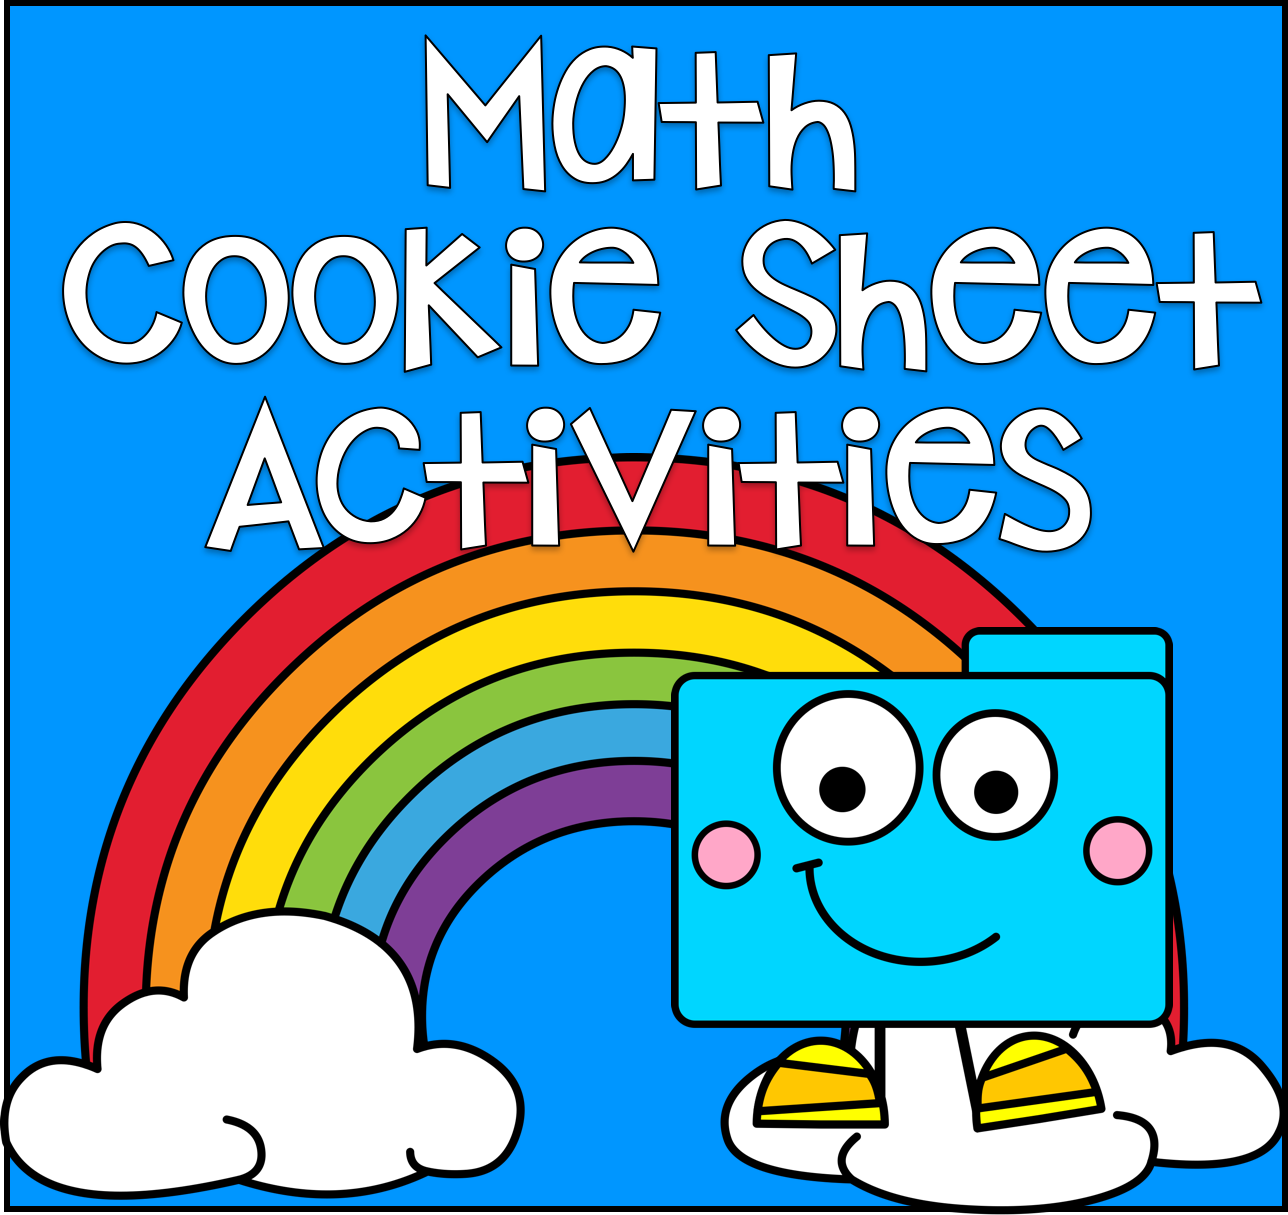 Math Cookie Sheet Activities